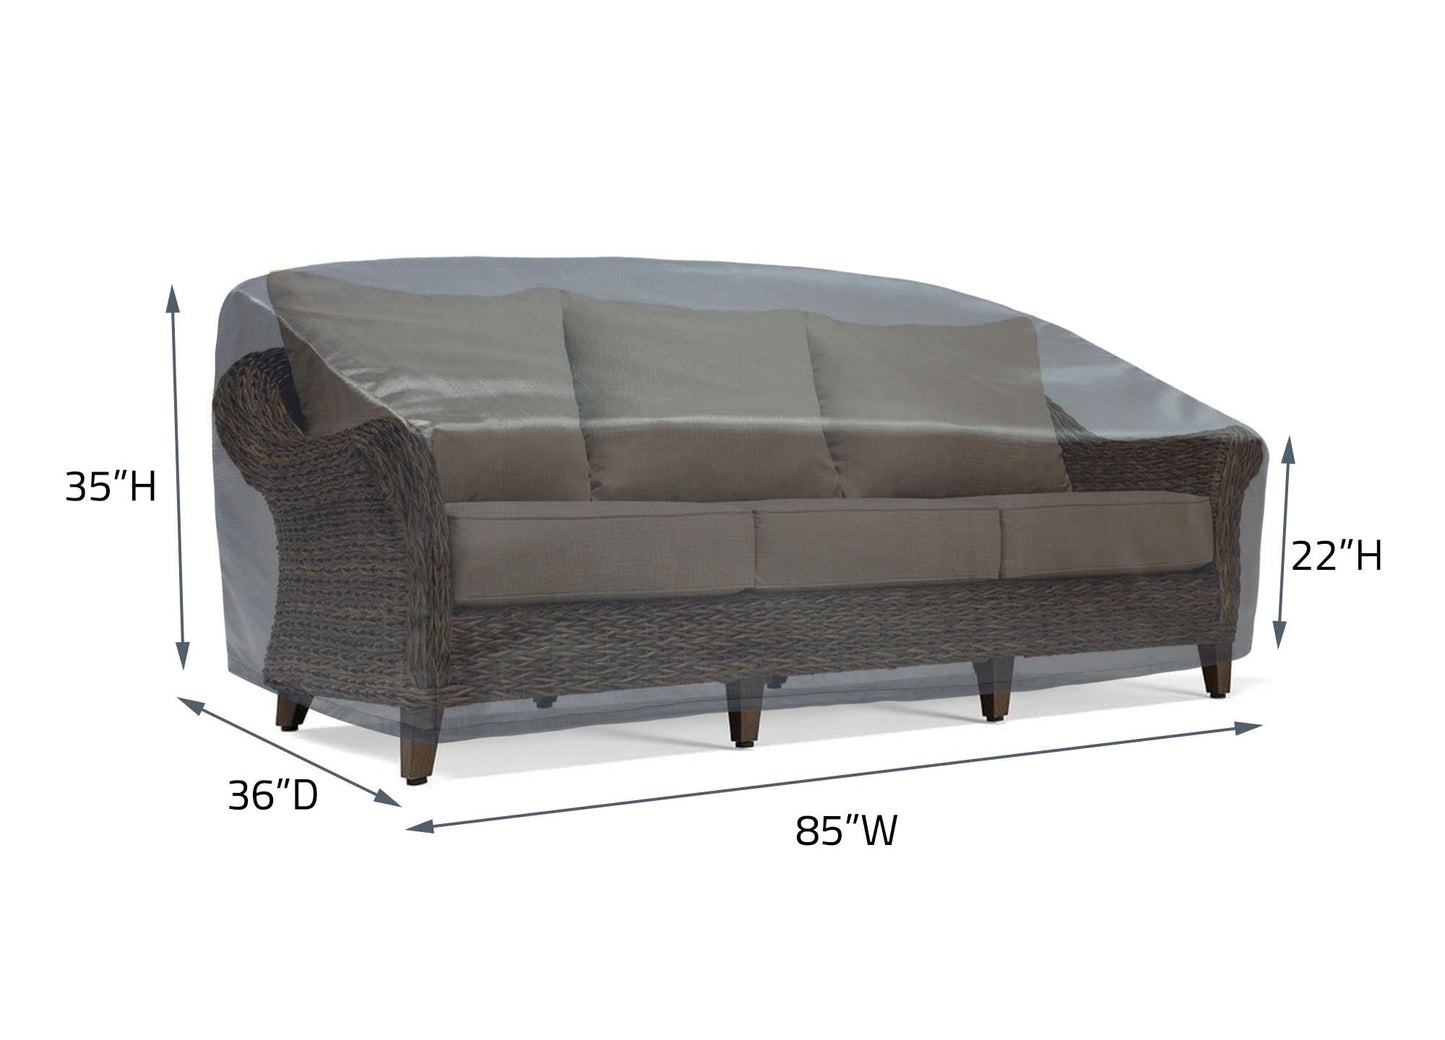 Sofa Cover - 85"Wx36"Dx35"H - Mercury